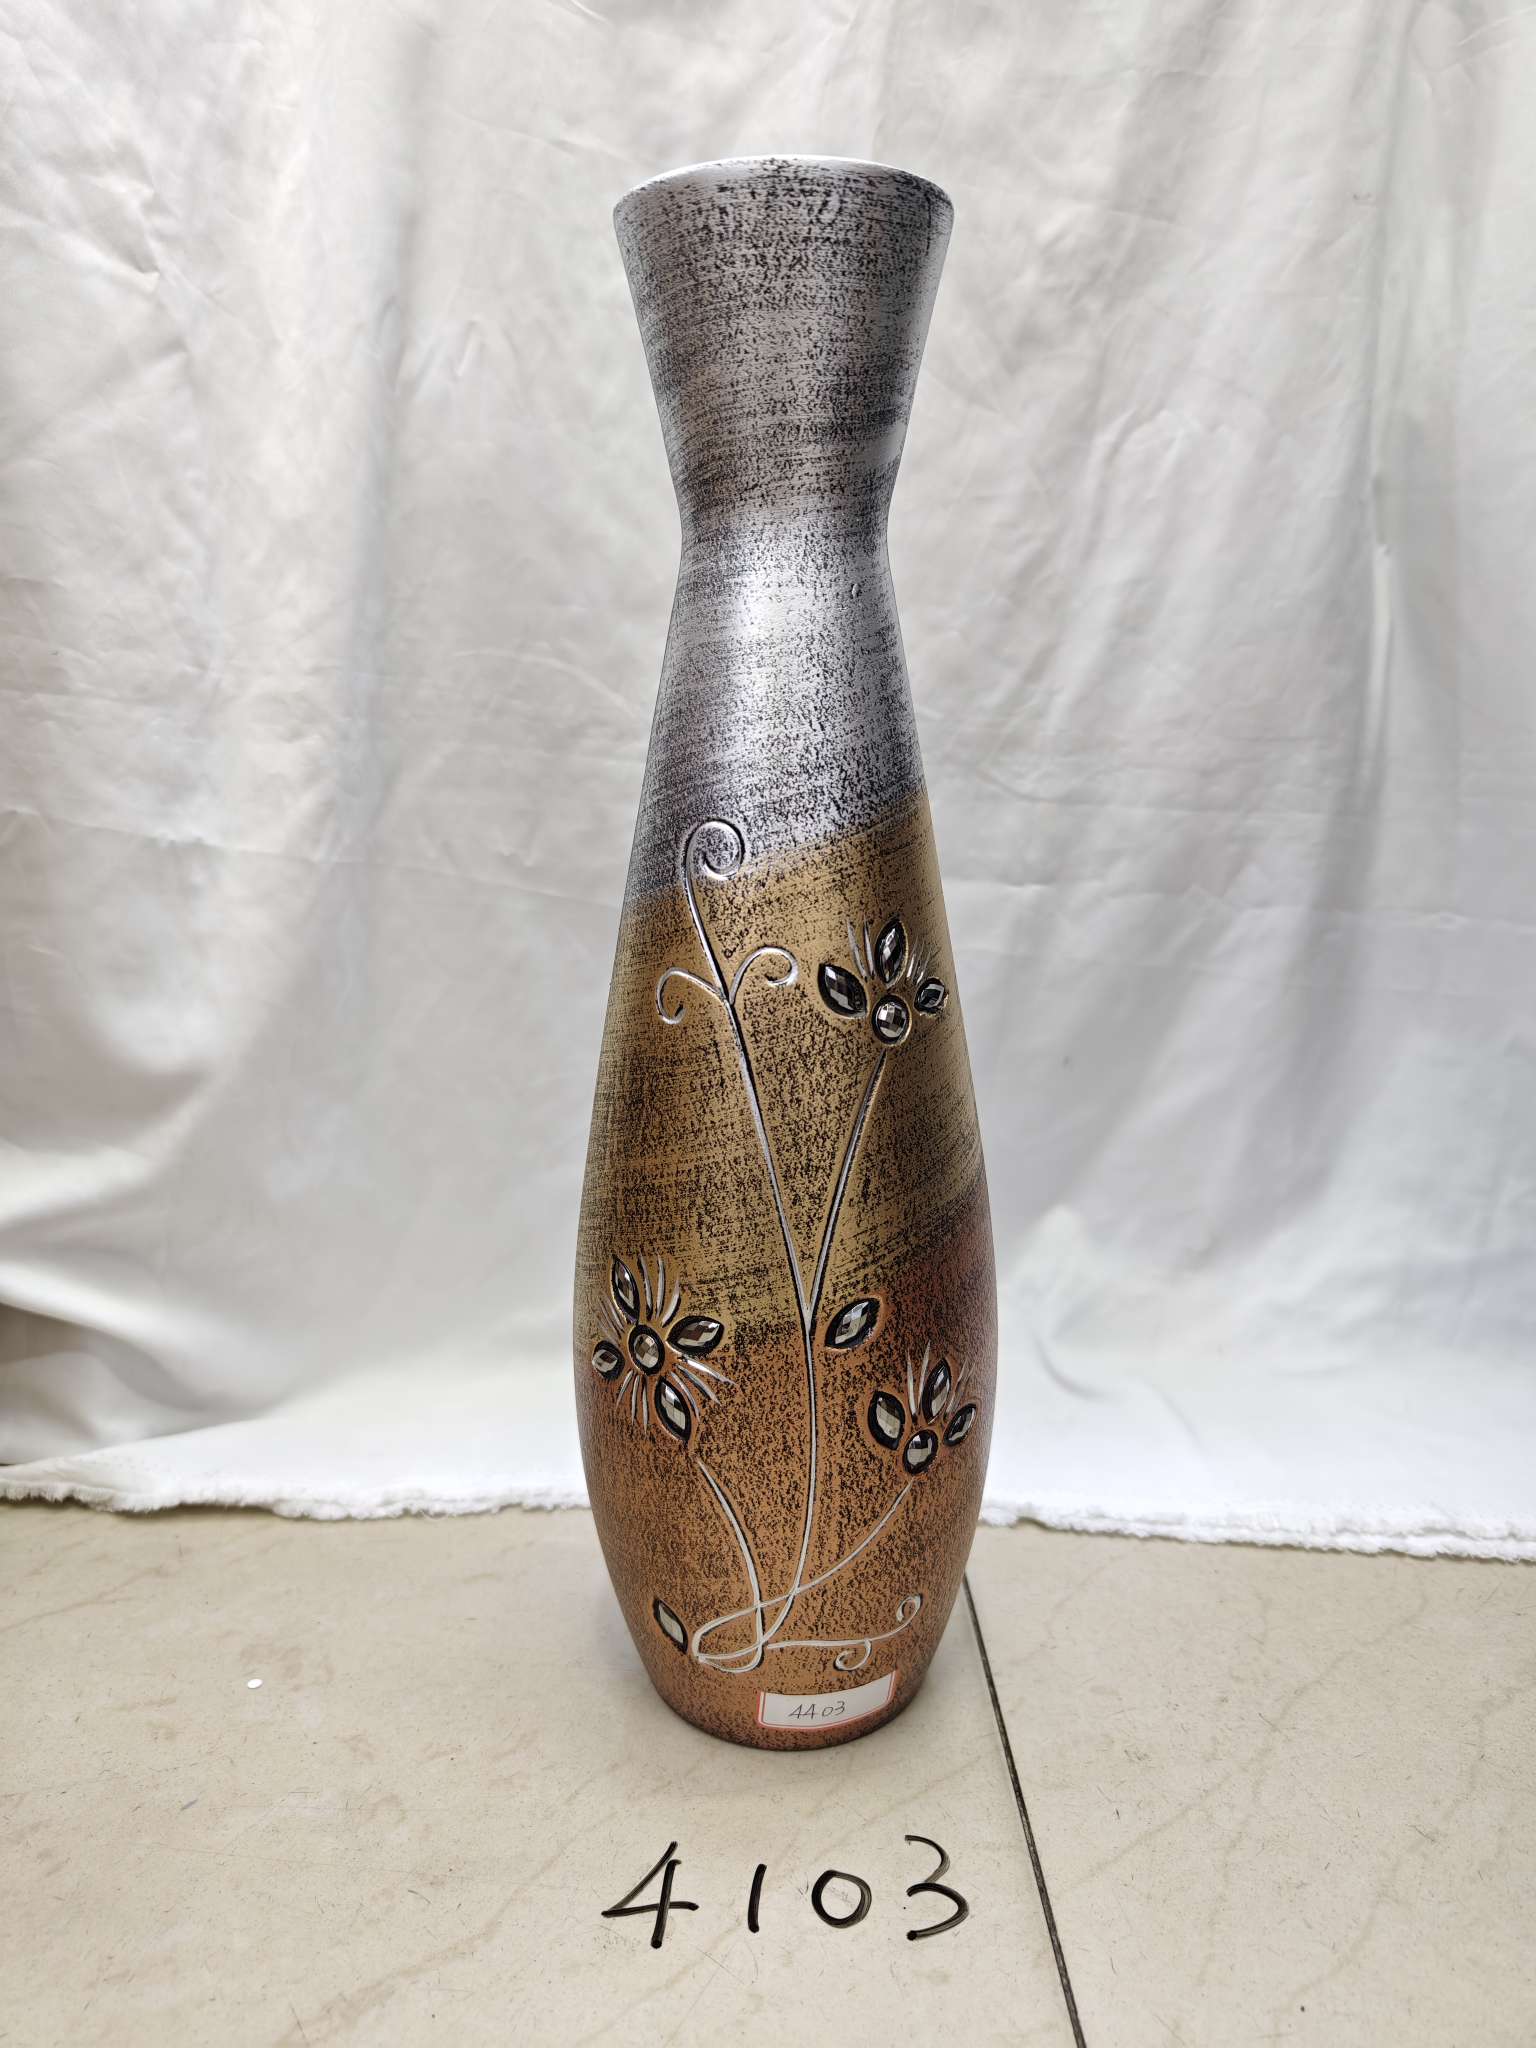 木质工艺品 摆件 花瓶礼品 手工制作材料 DIY创意手工艺品